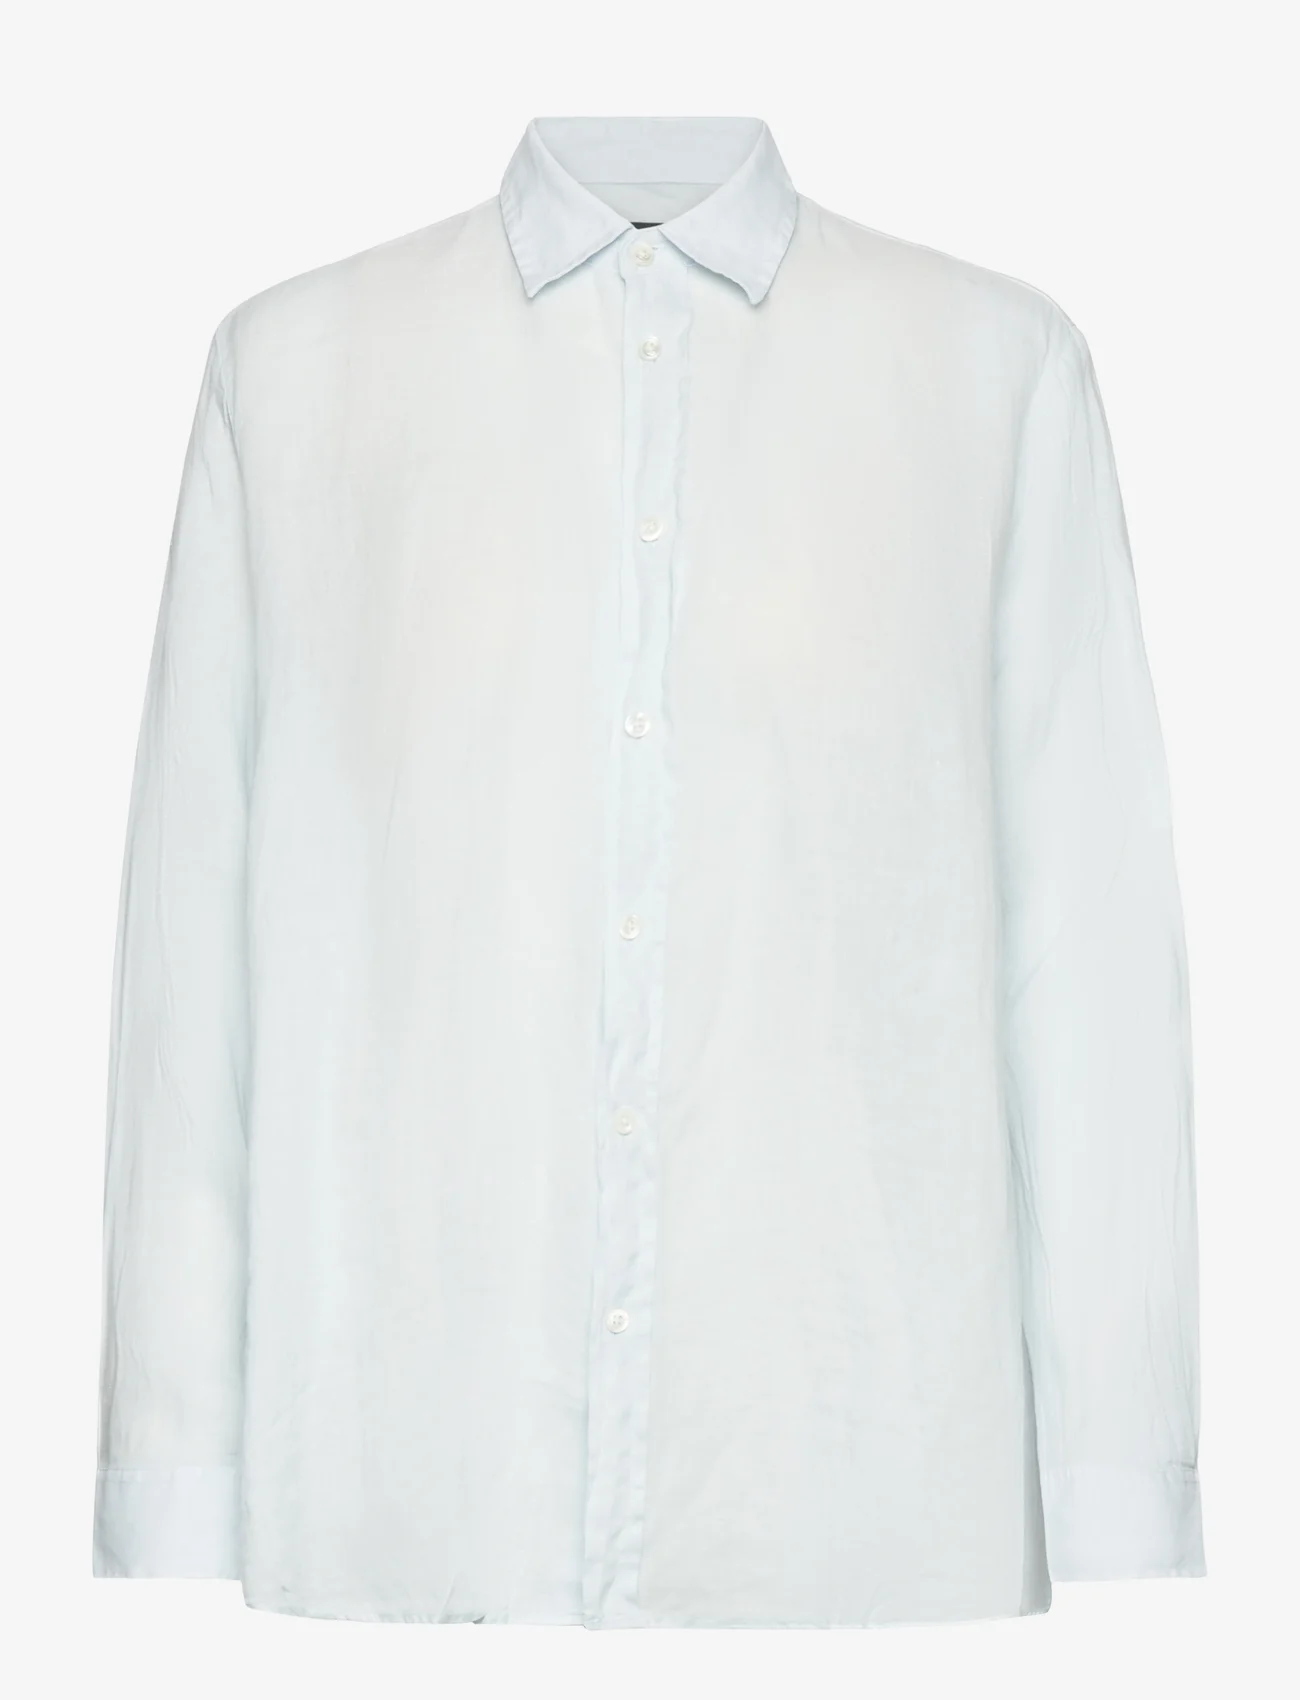 Hope - Boxy Shirt - langærmede skjorter - geyser grey linen - 0